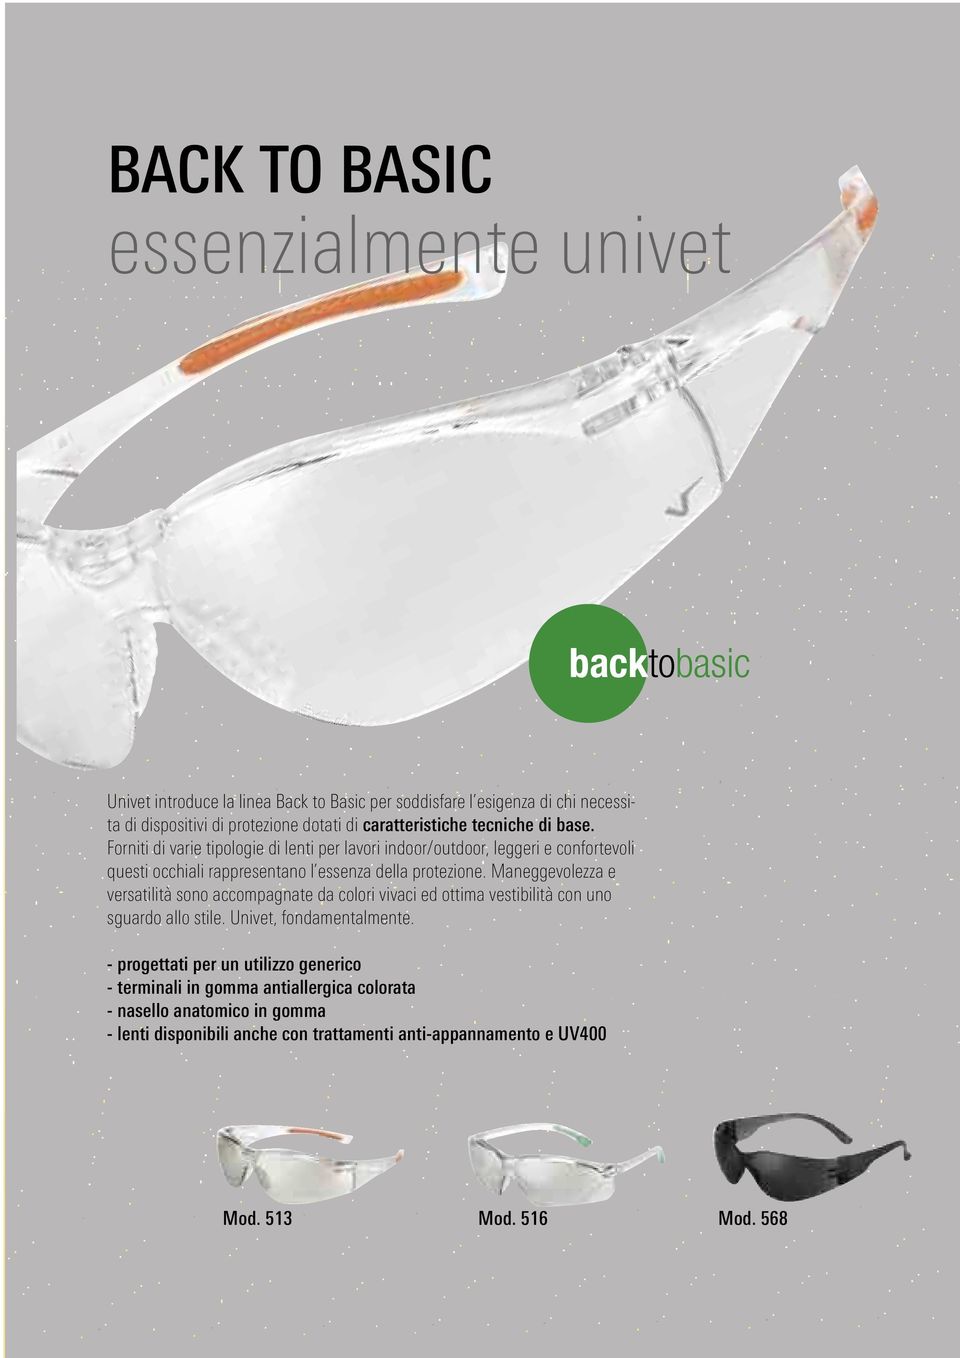 Forniti di varie tipologie di lenti per lavori indoor/outdoor, leggeri e confortevoli questi occhiali rappresentano l essenza della protezione.